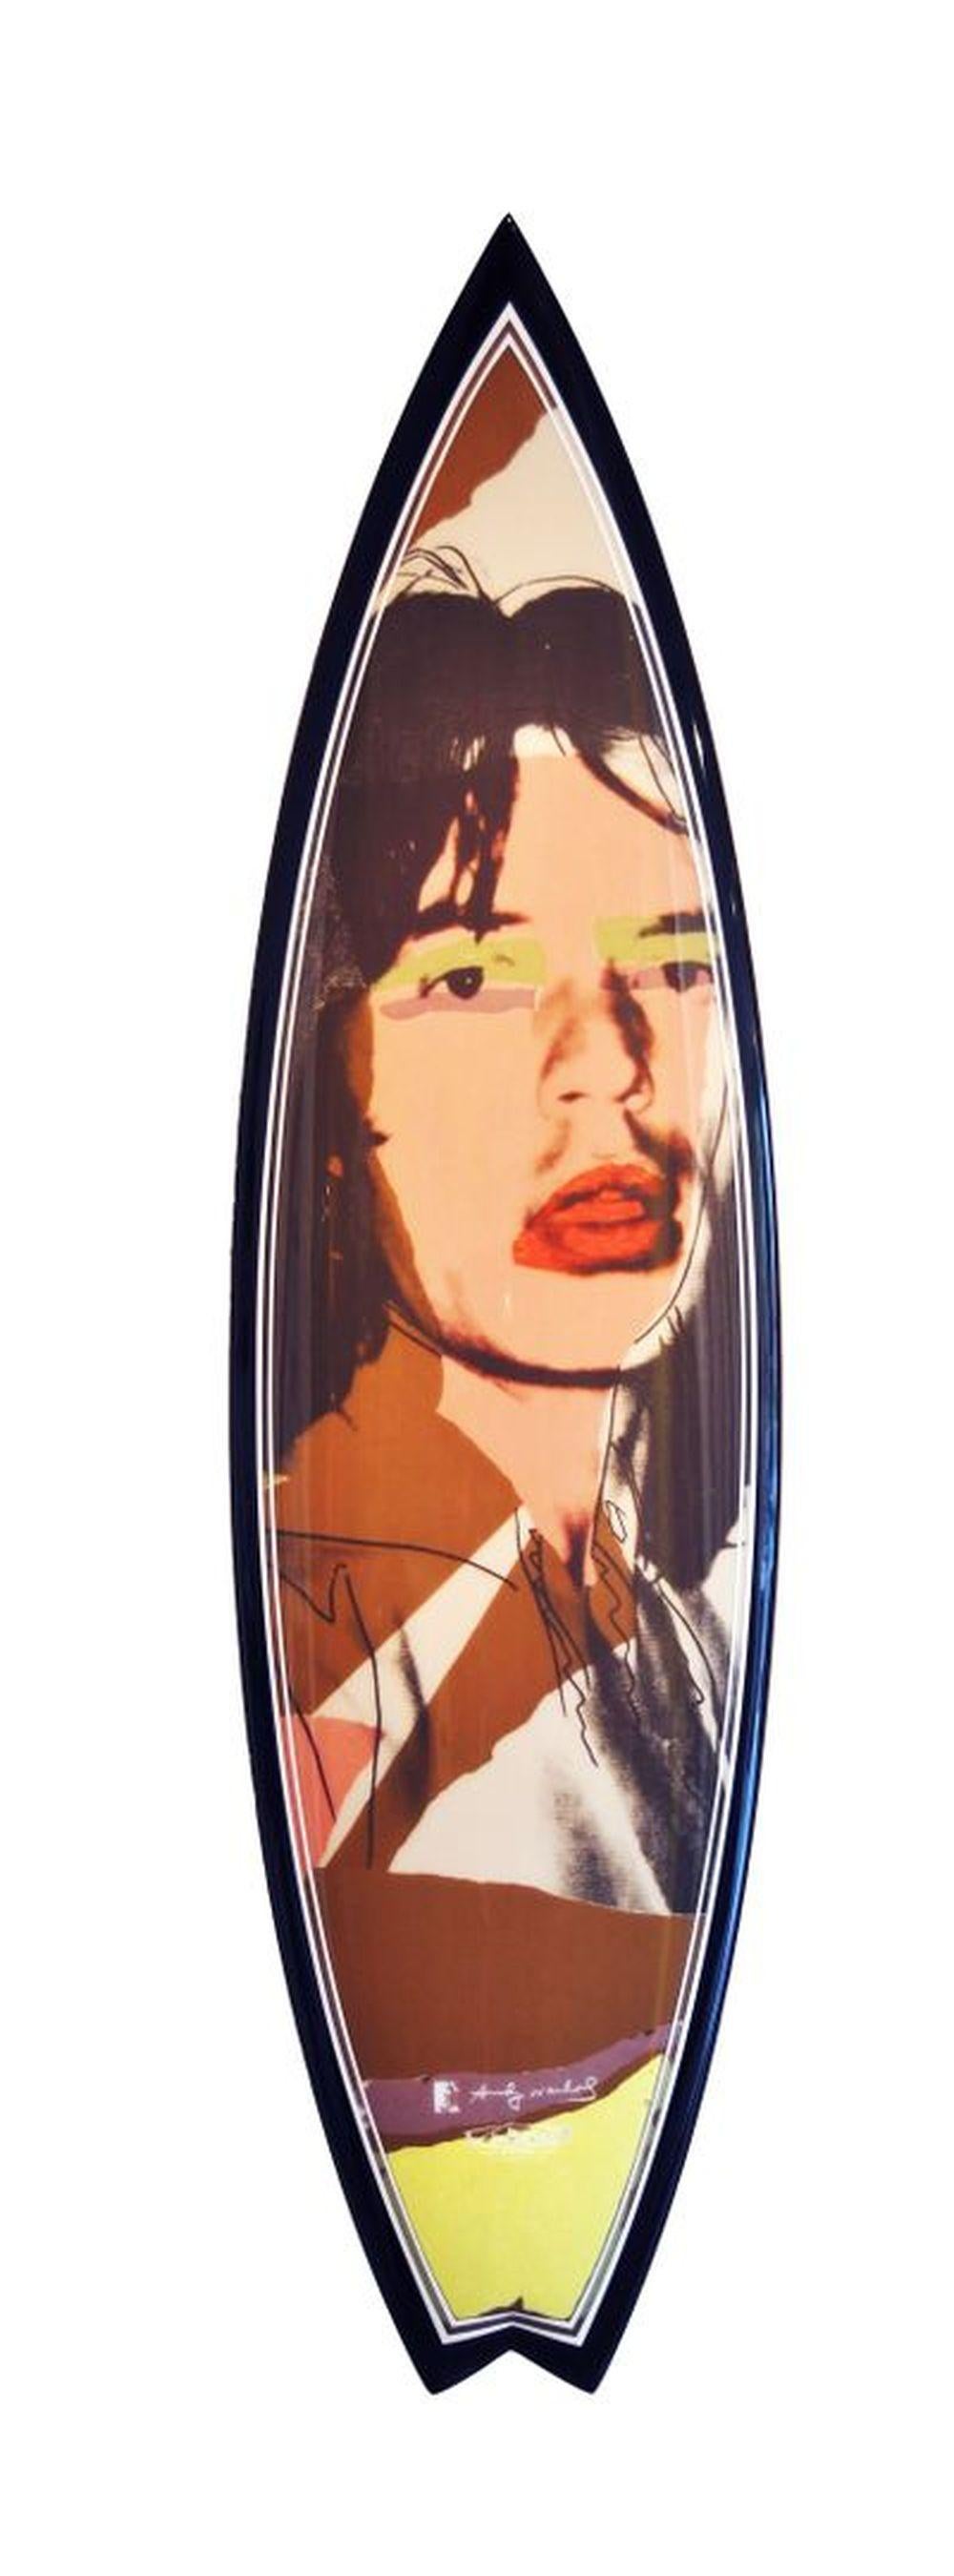 Tim Bessell Abstract Sculpture – Mick Jagger Andy Warhol Surfbrett 